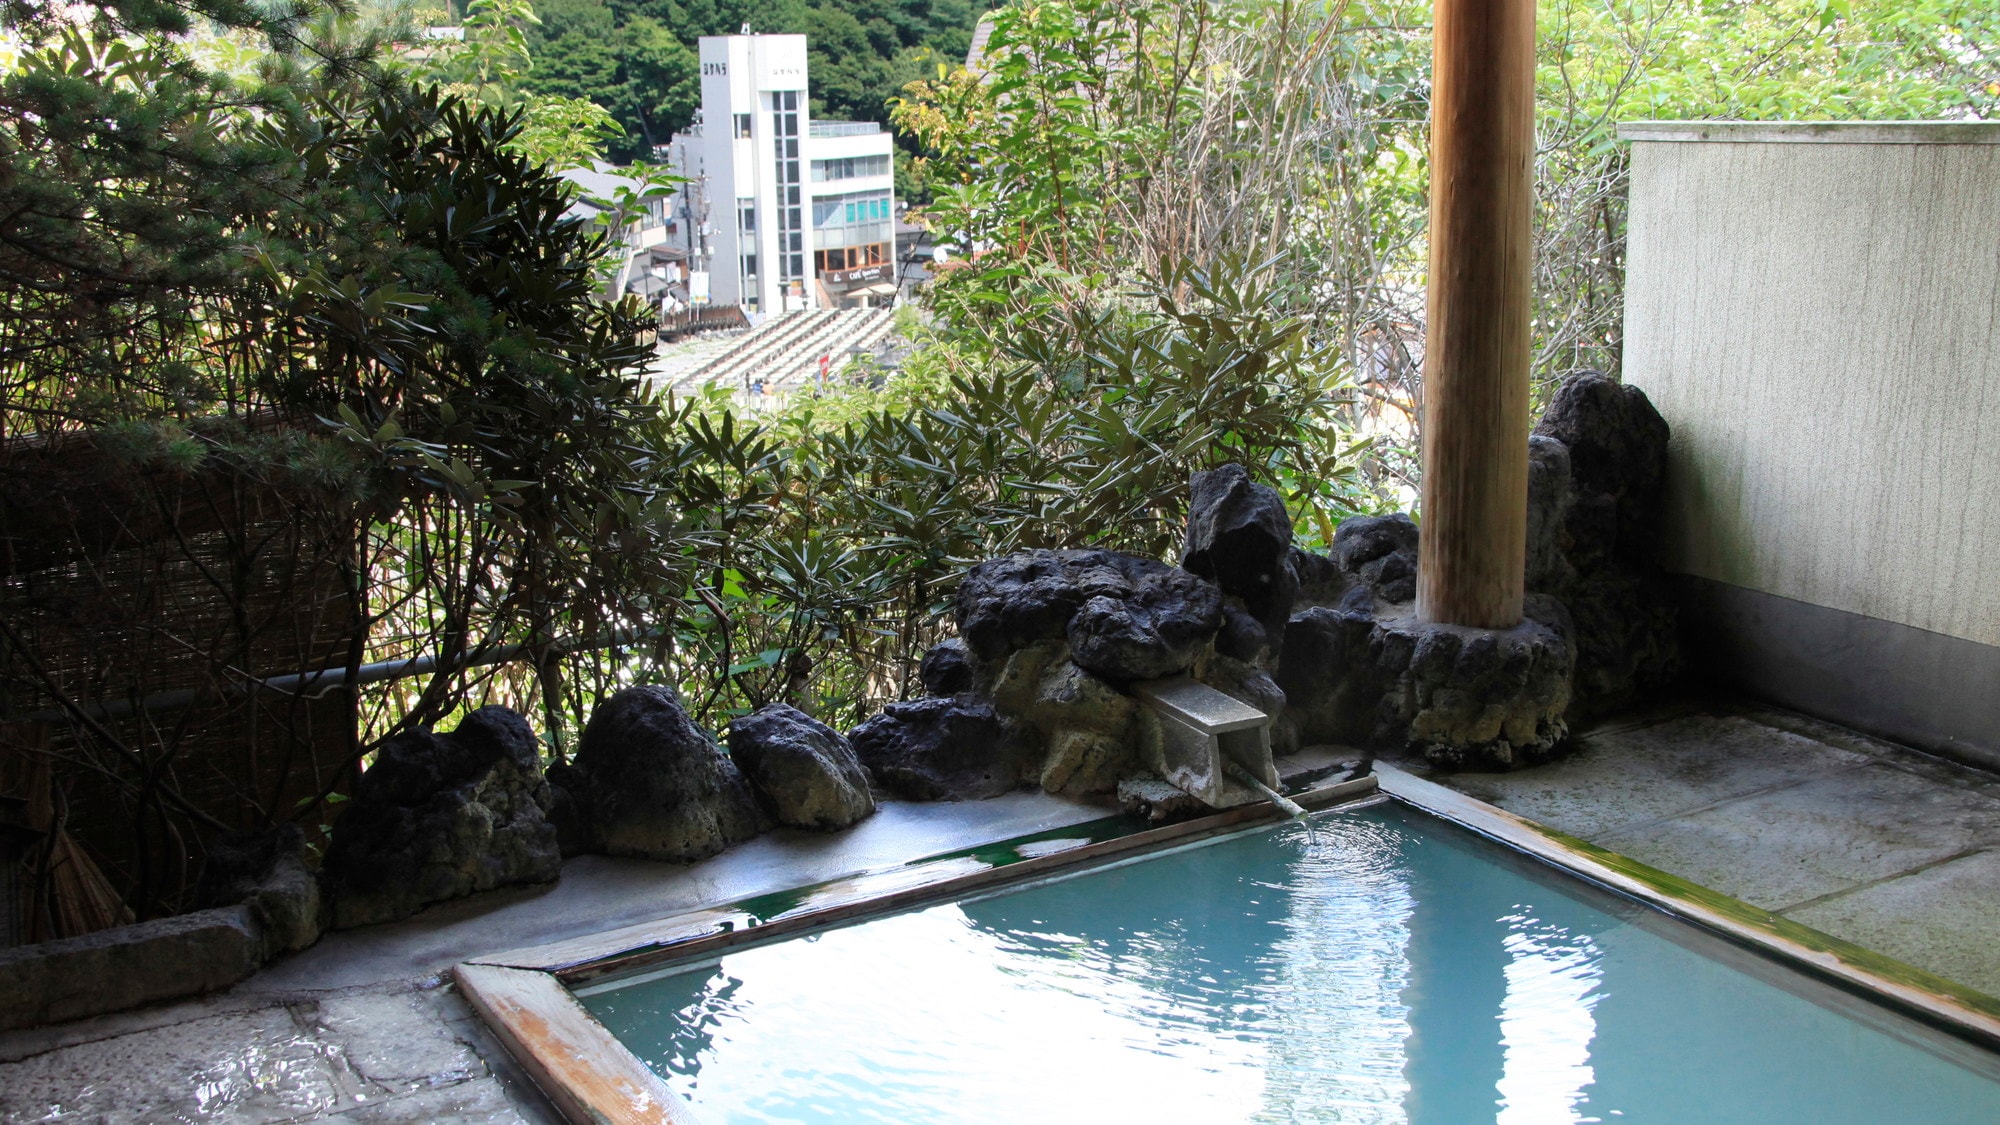 อ่างอาบน้ำกลางแจ้งที่มองเห็น Yubatake เพียงแห่งเดียวใน Kusatsu แหล่งน้ำพุร้อนที่มีชื่อเสียง "แหล่งธงขาว" ไหล 100%